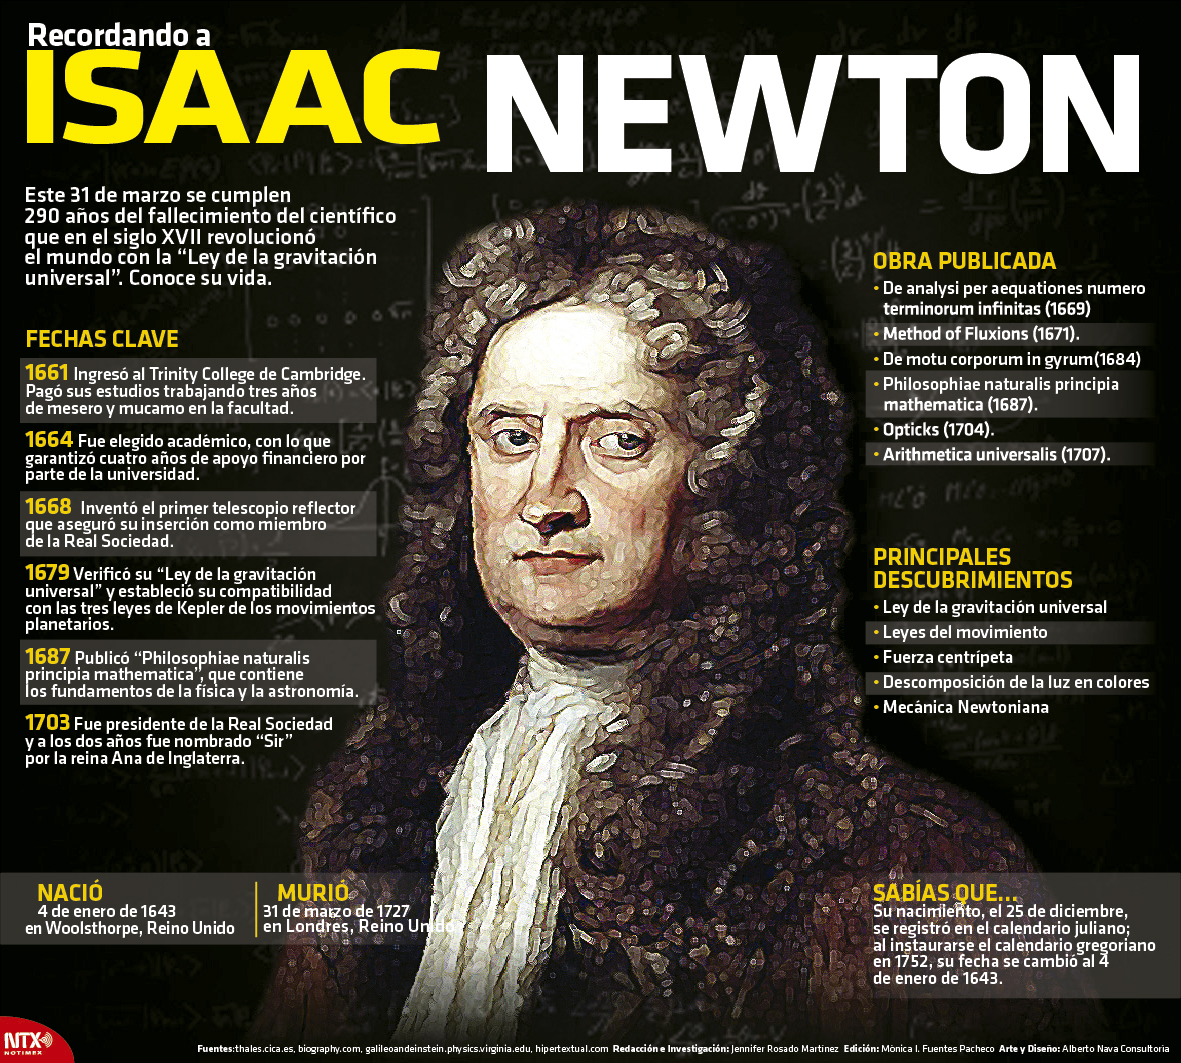 Recordando a Isaac Newton